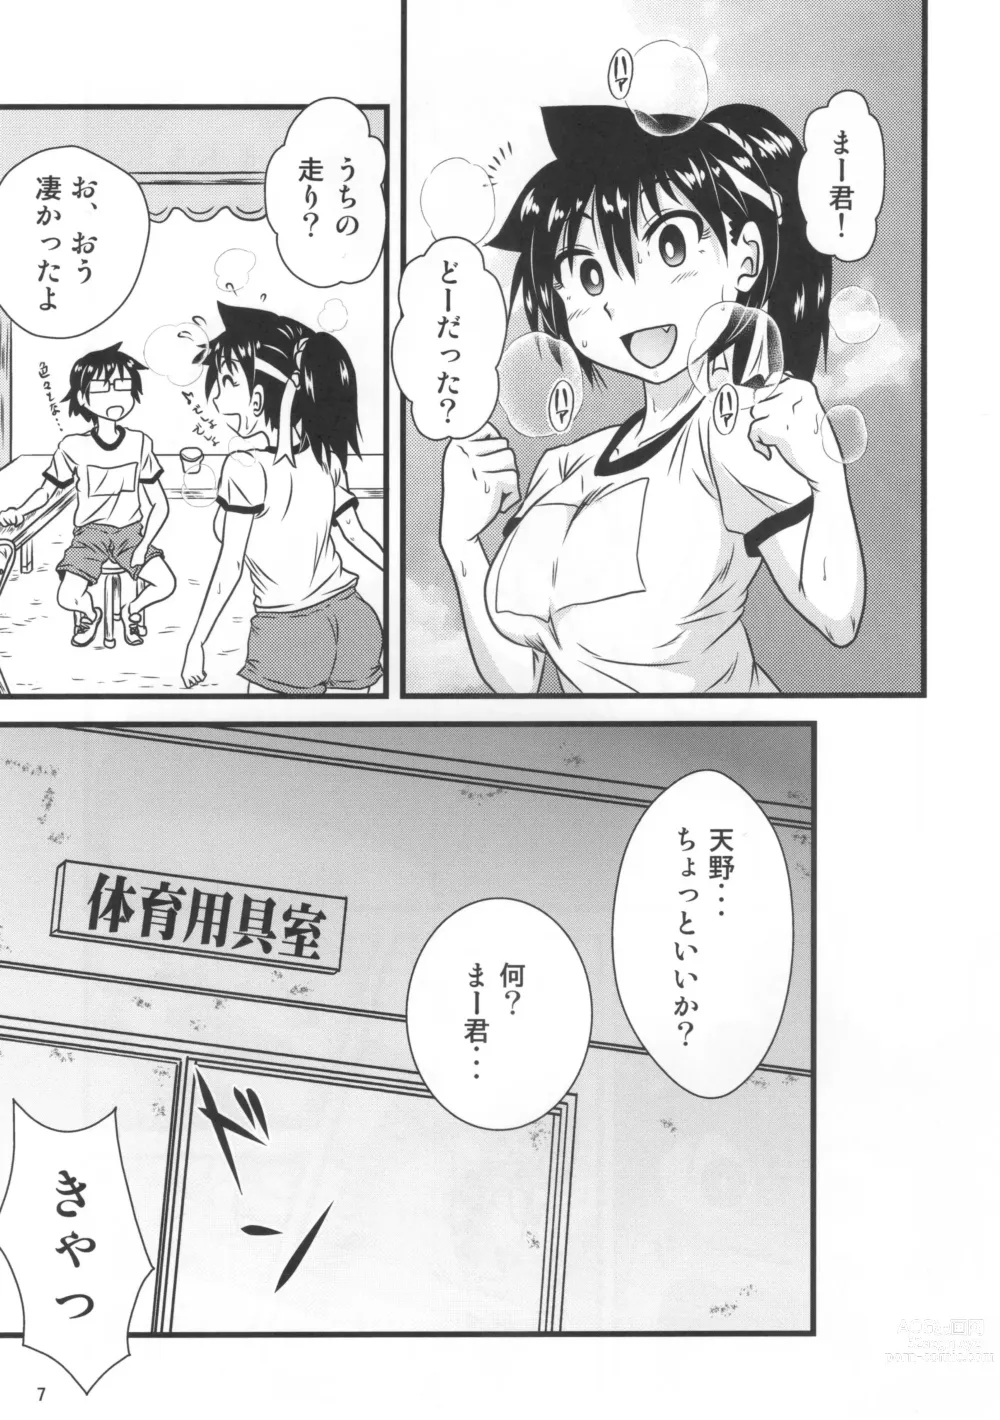 Page 6 of doujinshi Muchimuchi Amanocchi 2